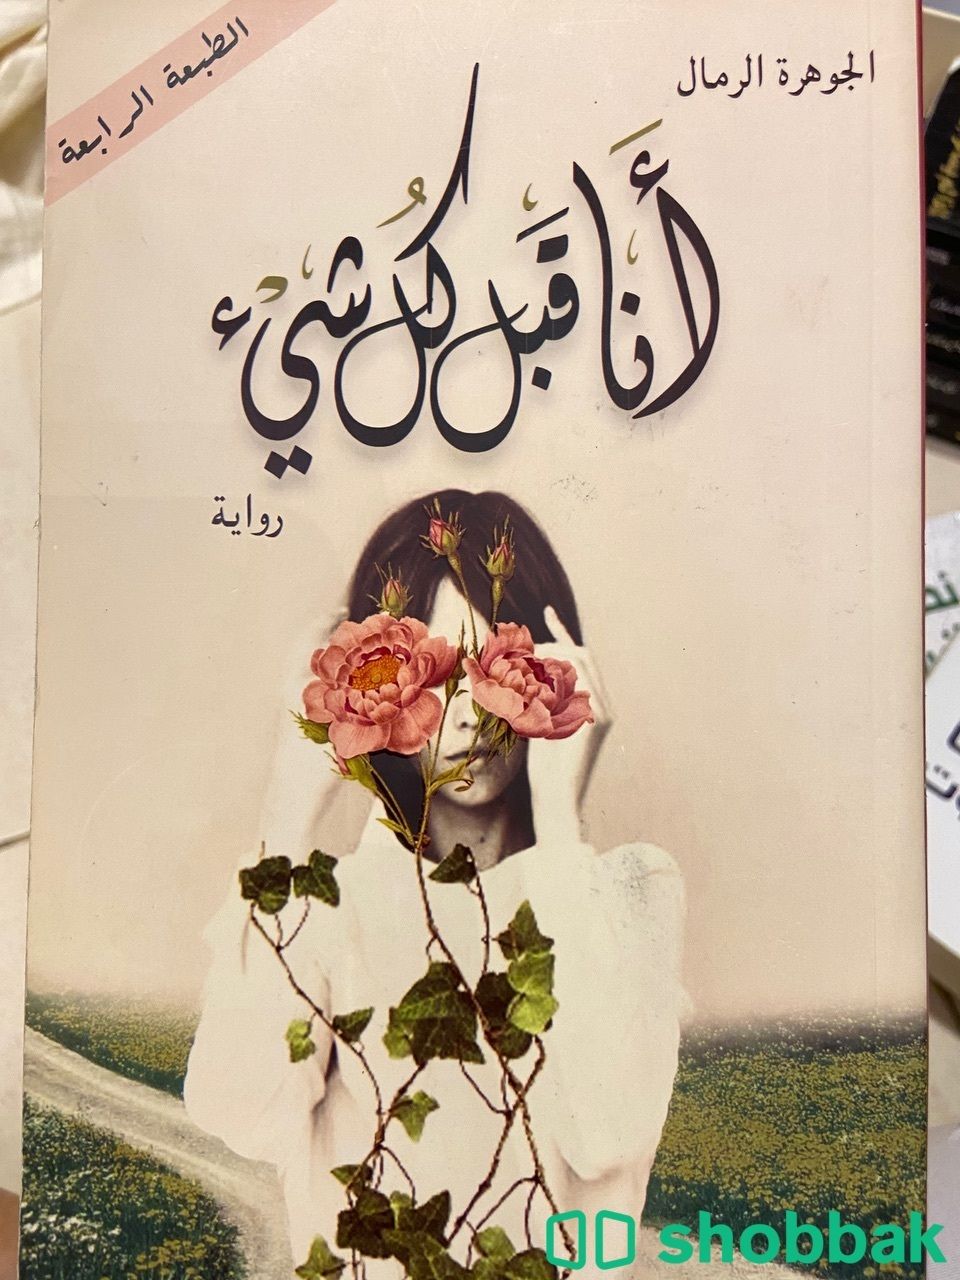 كتاب أنا قبل كل شي Shobbak Saudi Arabia